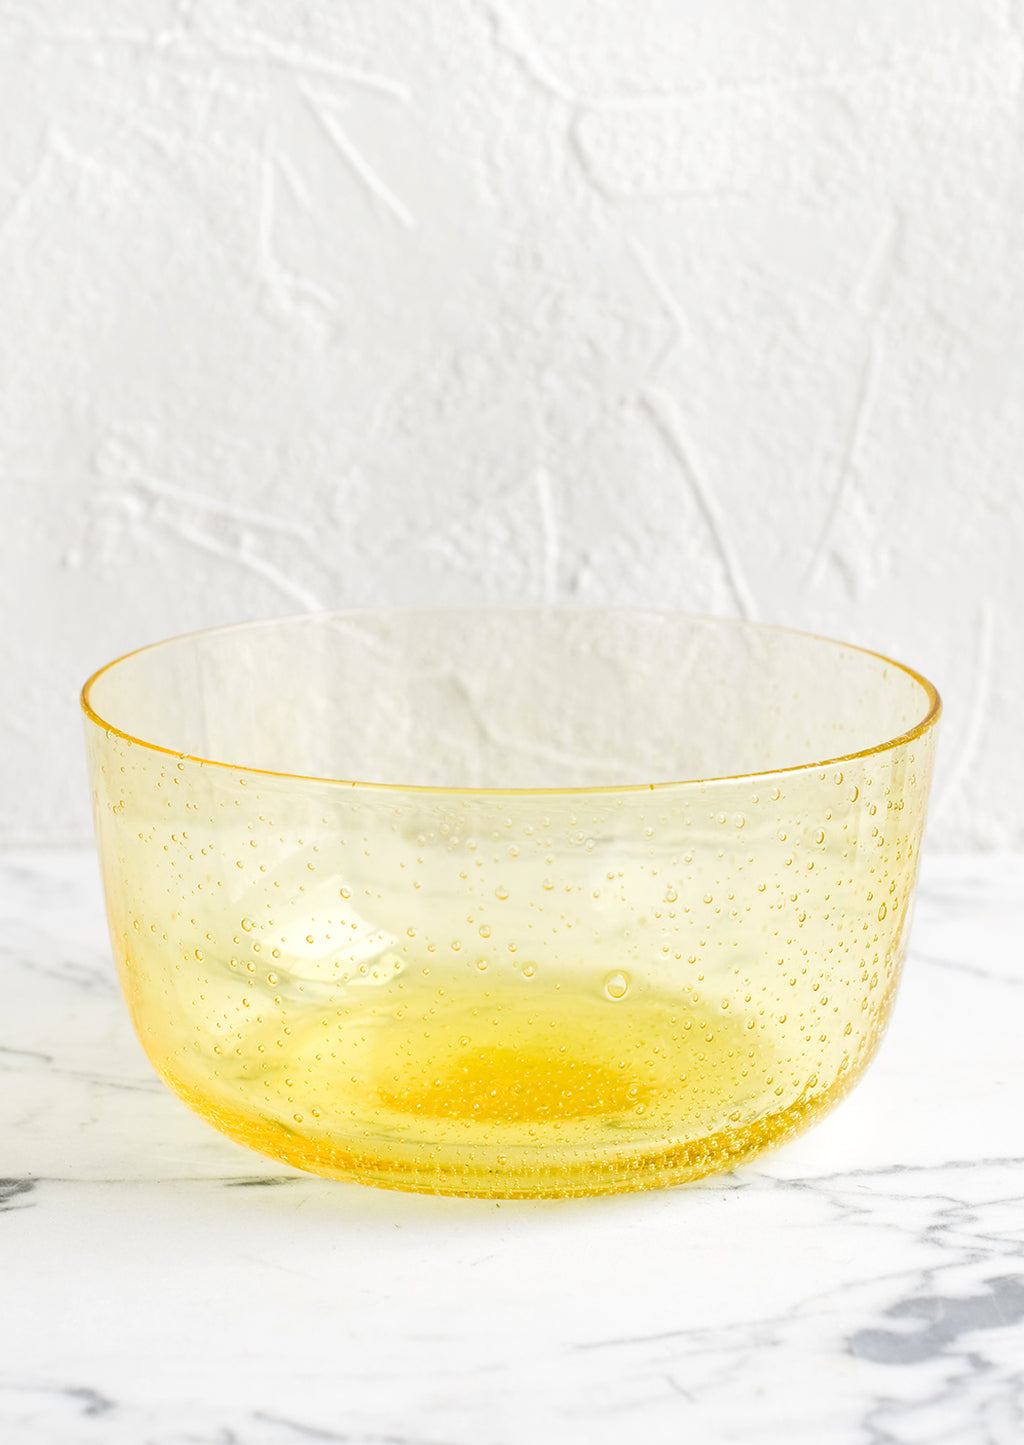 Lemon: A glass bowl in yellow.